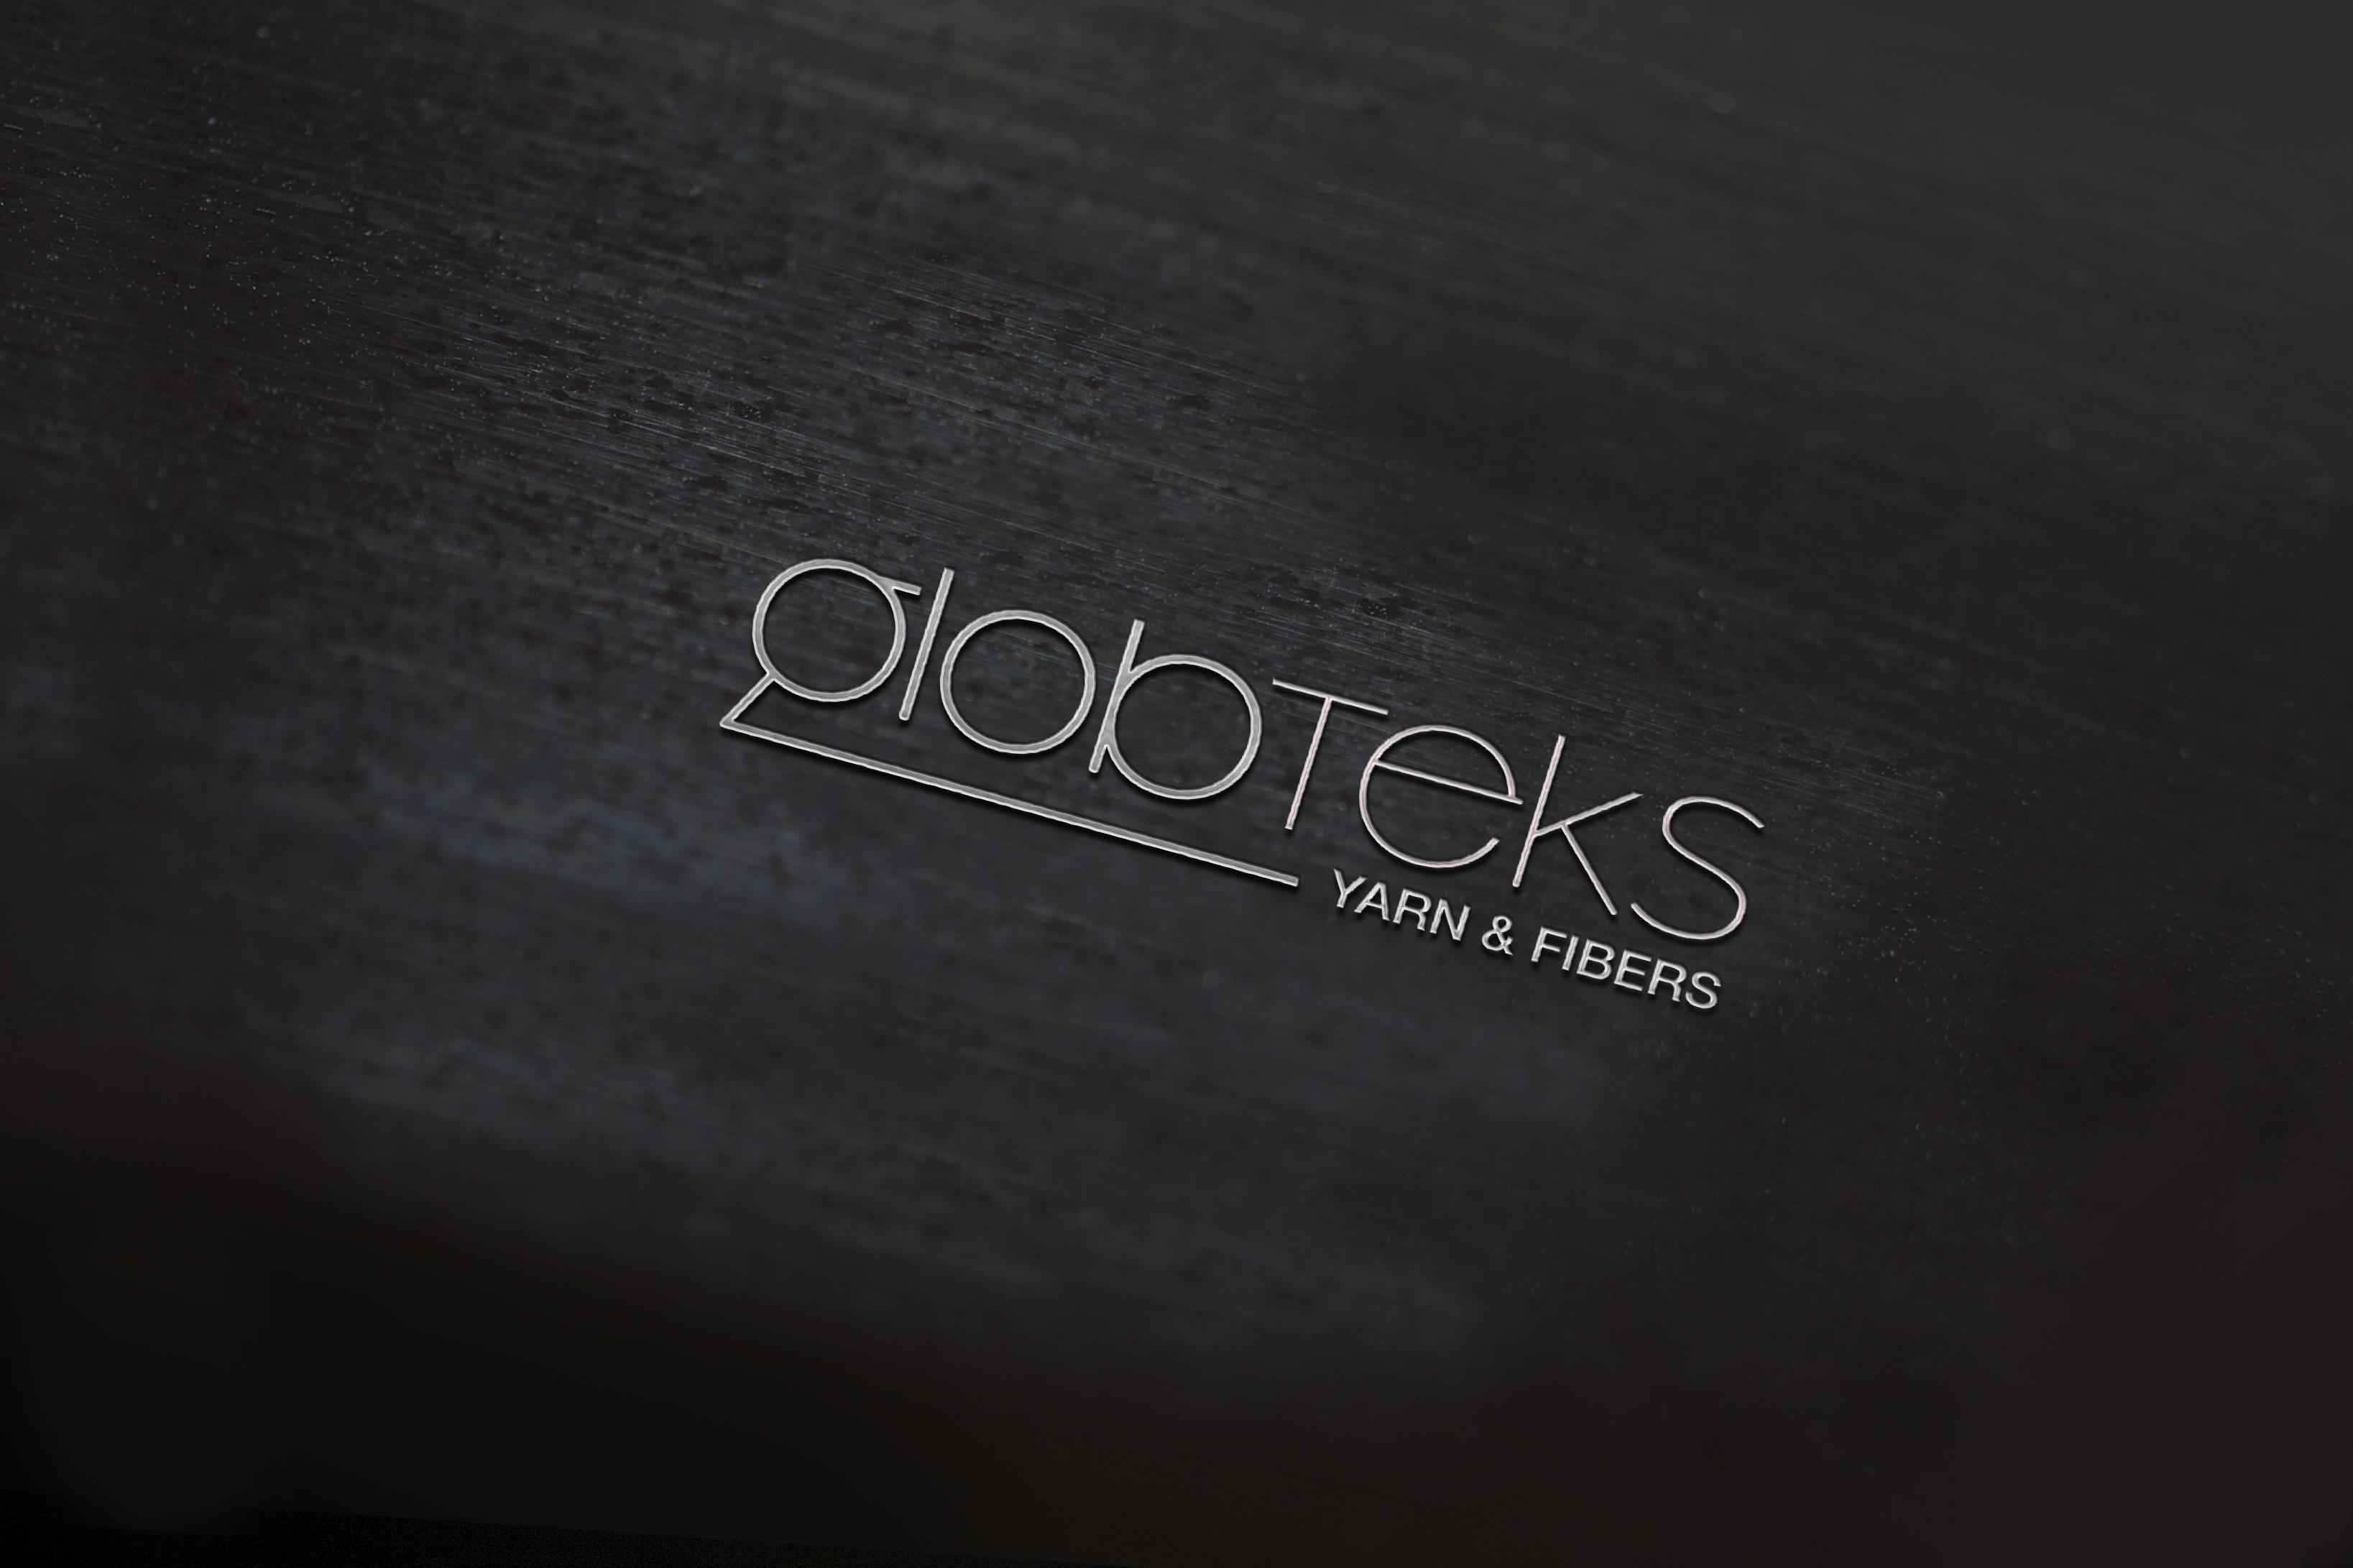 Globteks Logo ve Kurumsal Kimlik Kılavuzu Tasarımı - Ruberu Reklam Ajansı İstanbul